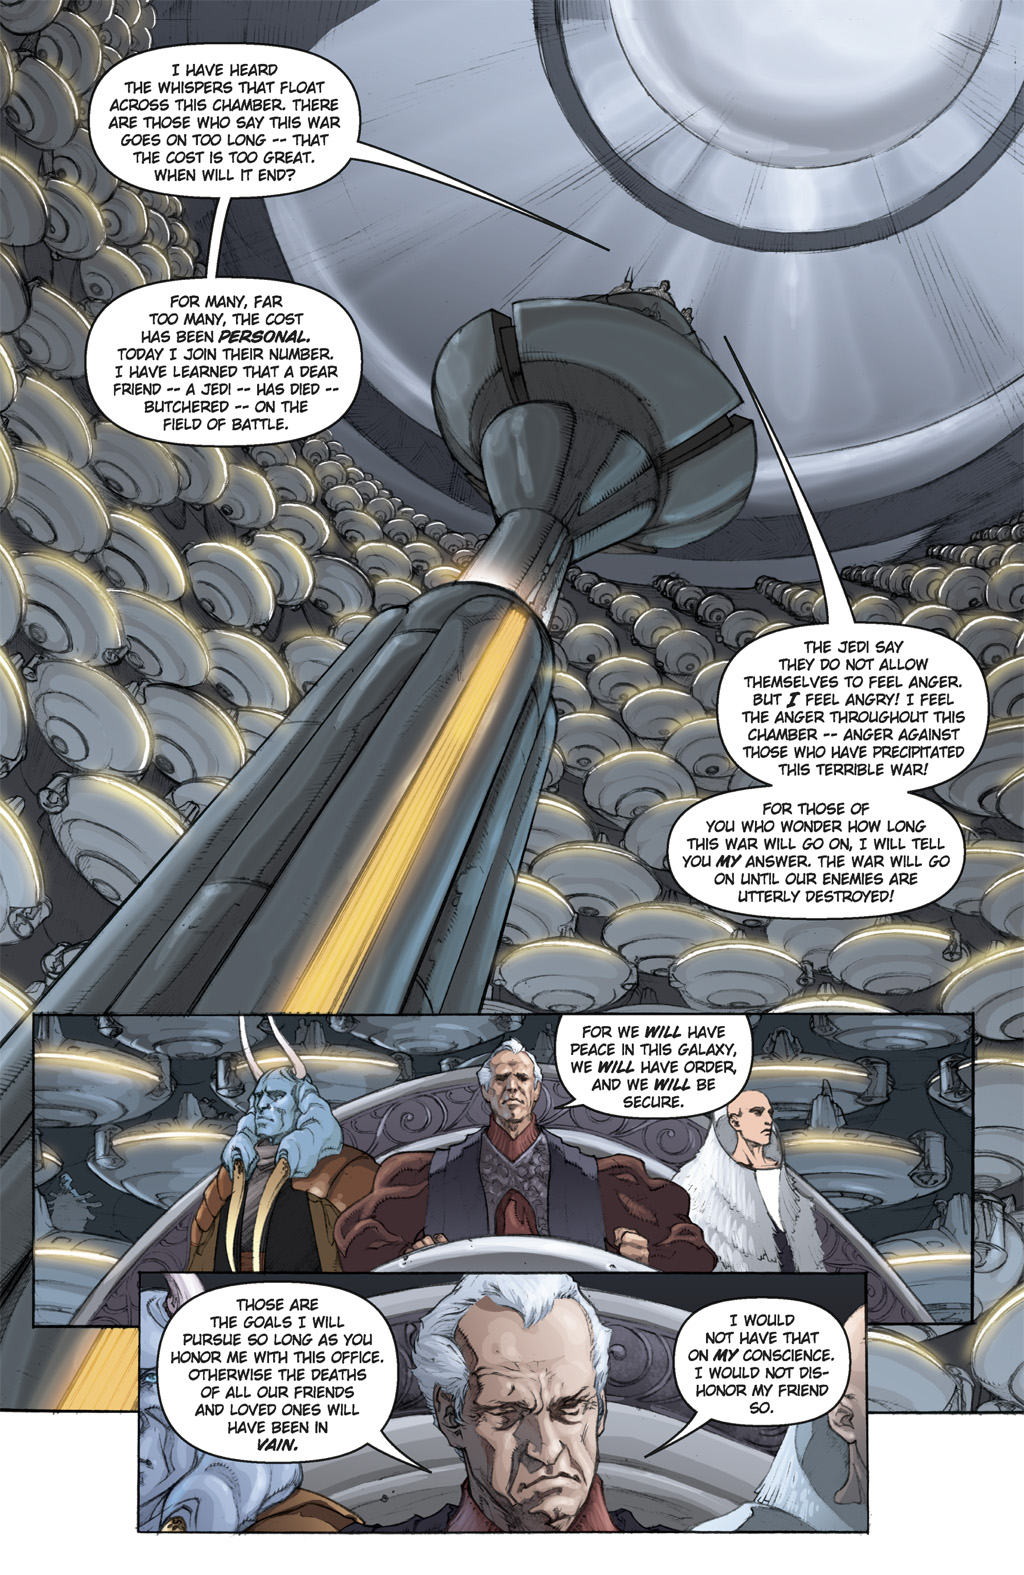 Read online Star Wars: Clone Wars comic -  Issue # TPB 5 - 32